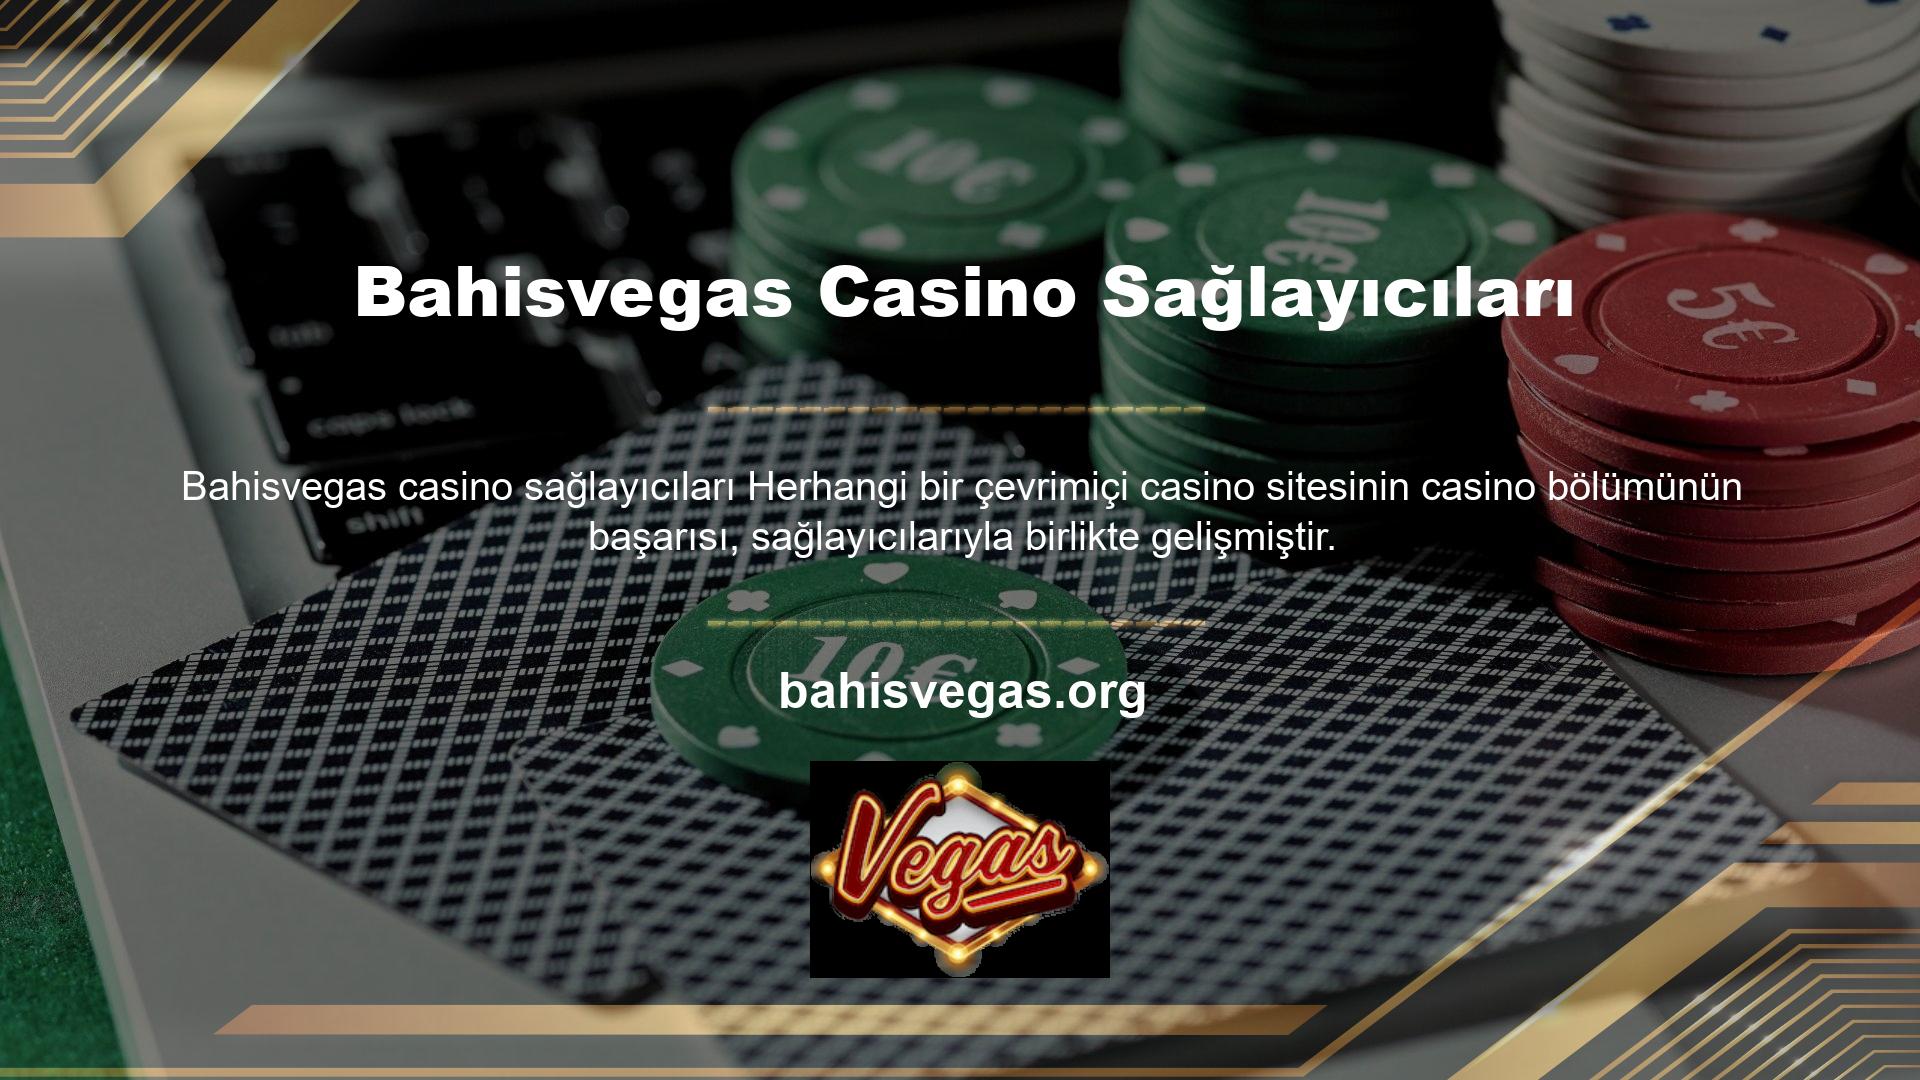 Bahisvegas casino sağlayıcıları